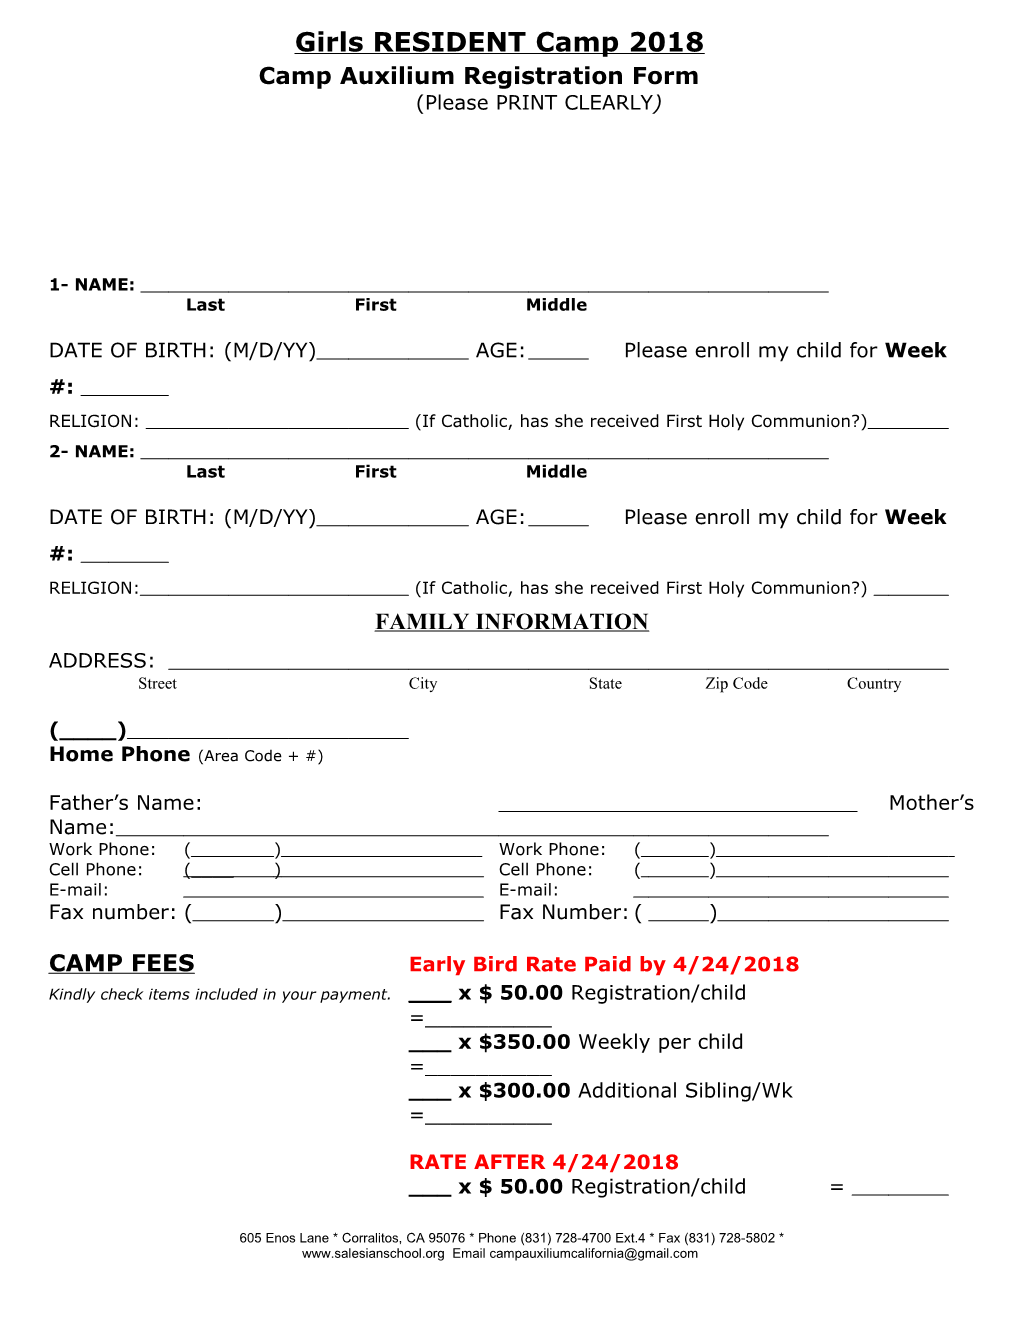 Camp Auxilium Registration Form